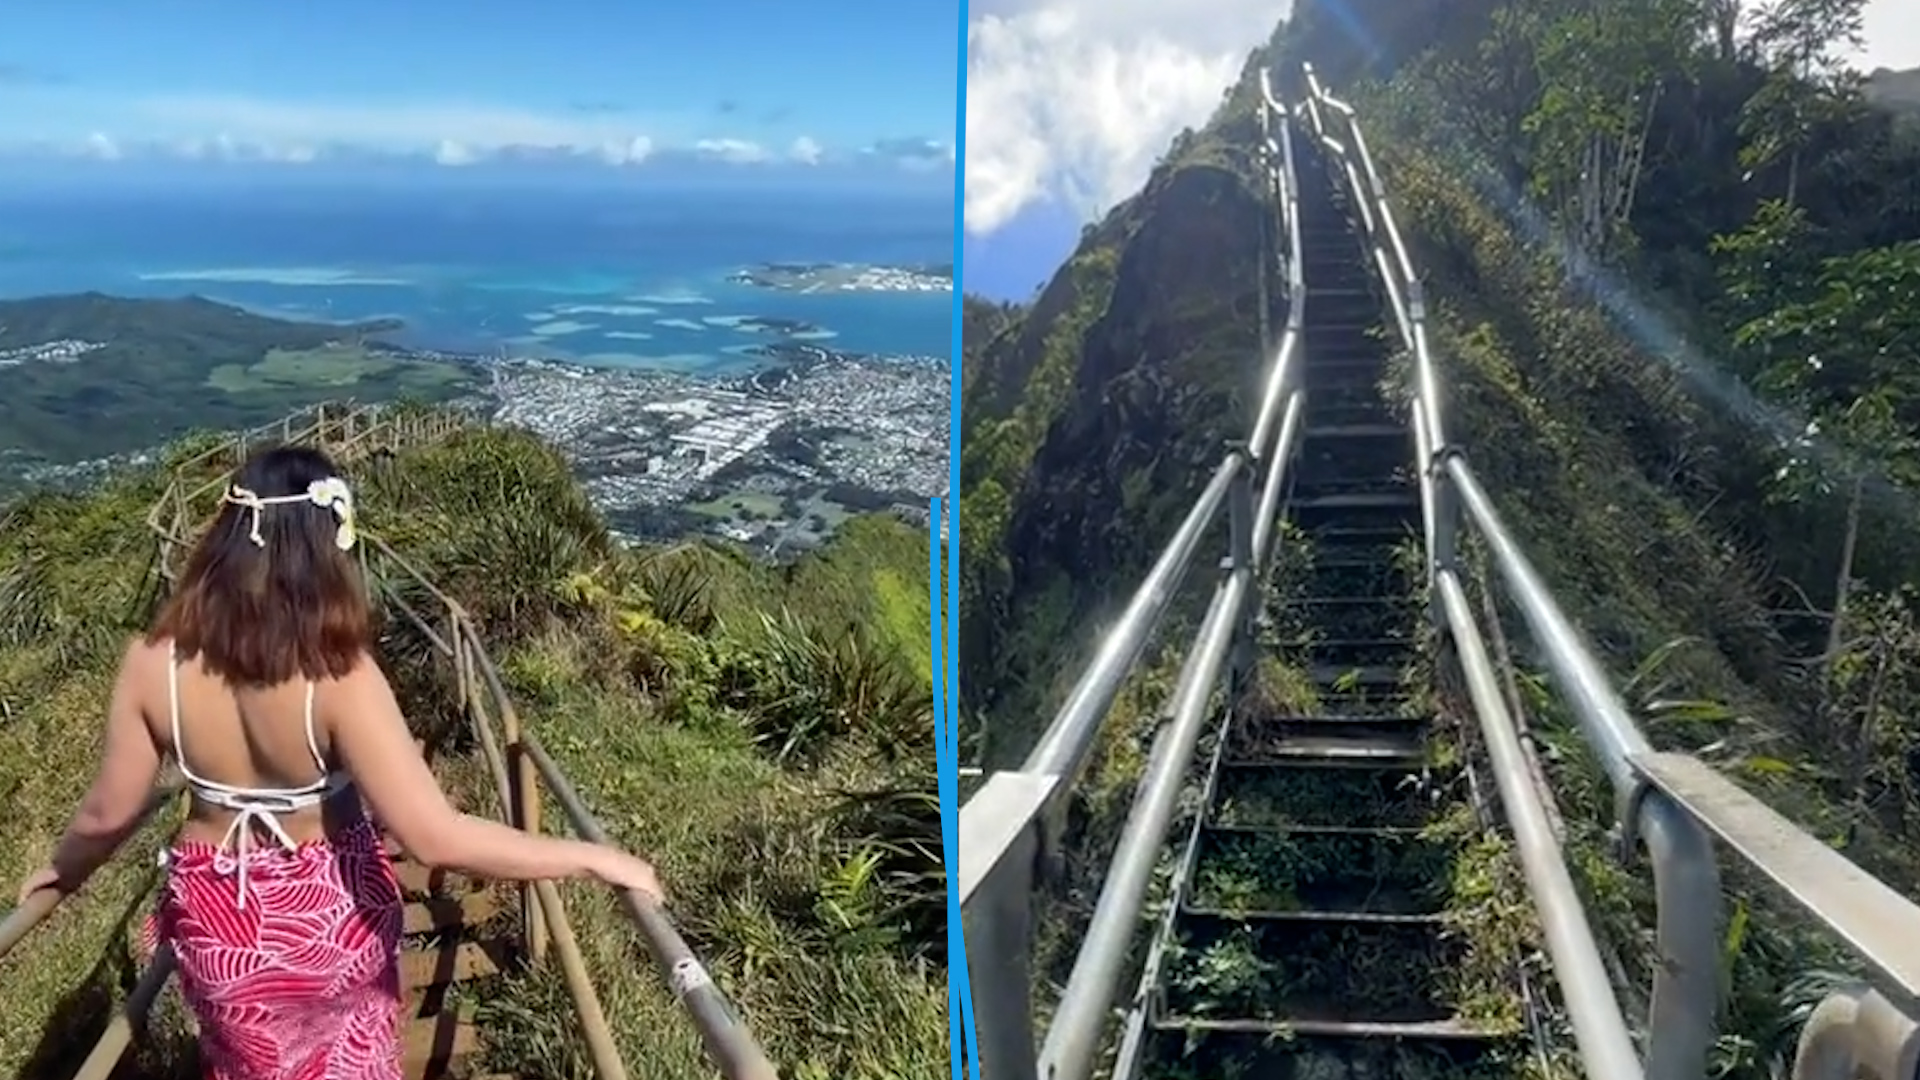 Lieu prisé des randonneurs, le célèbre « escalier du paradis » sur une île d’Hawaï, va être démoli.